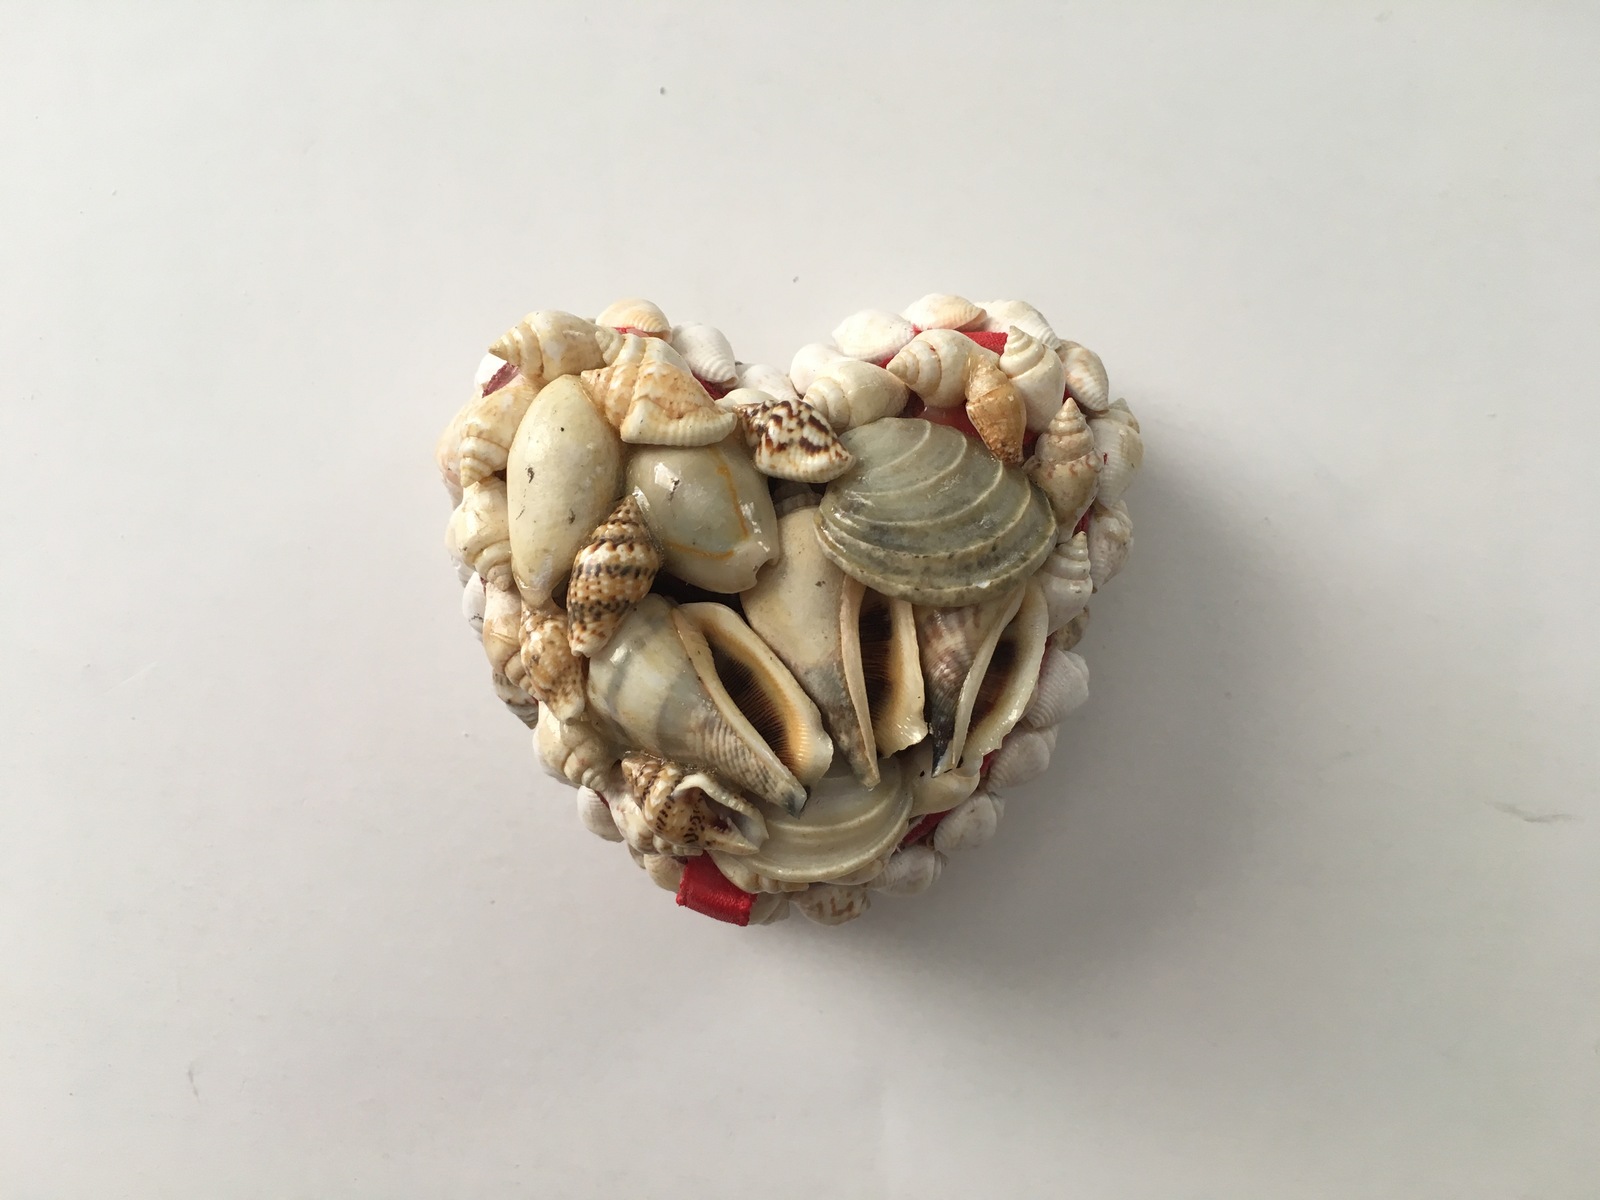 Nanco Heart Shaped Seashells Trinket Box - $5.75